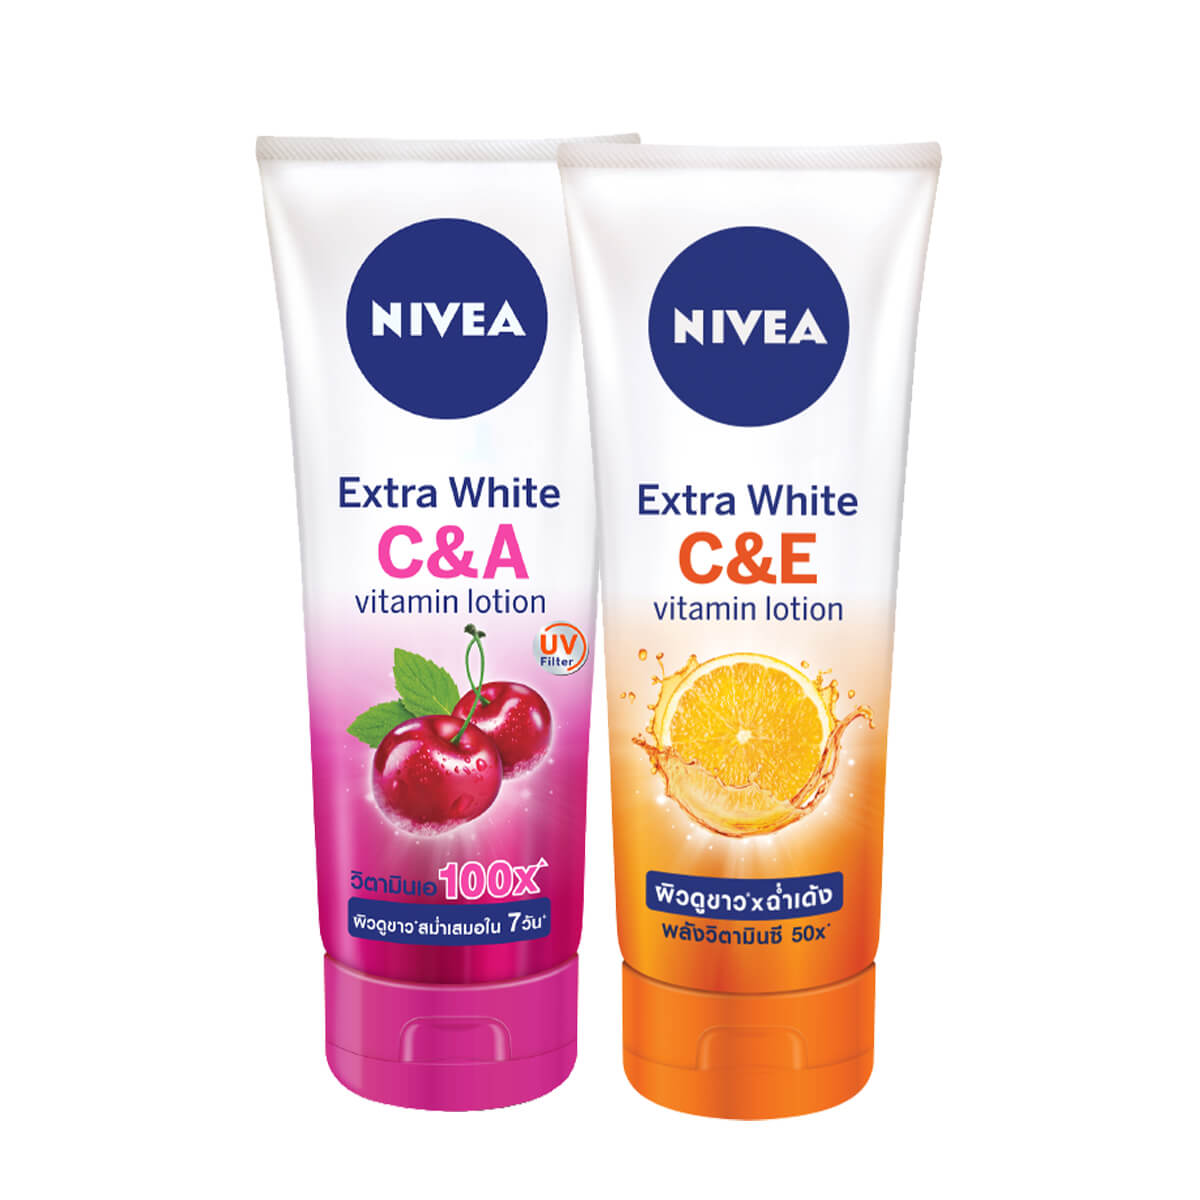 Kem dưỡng ẩm trắng da Nivea chứa vitamin C cô đặc